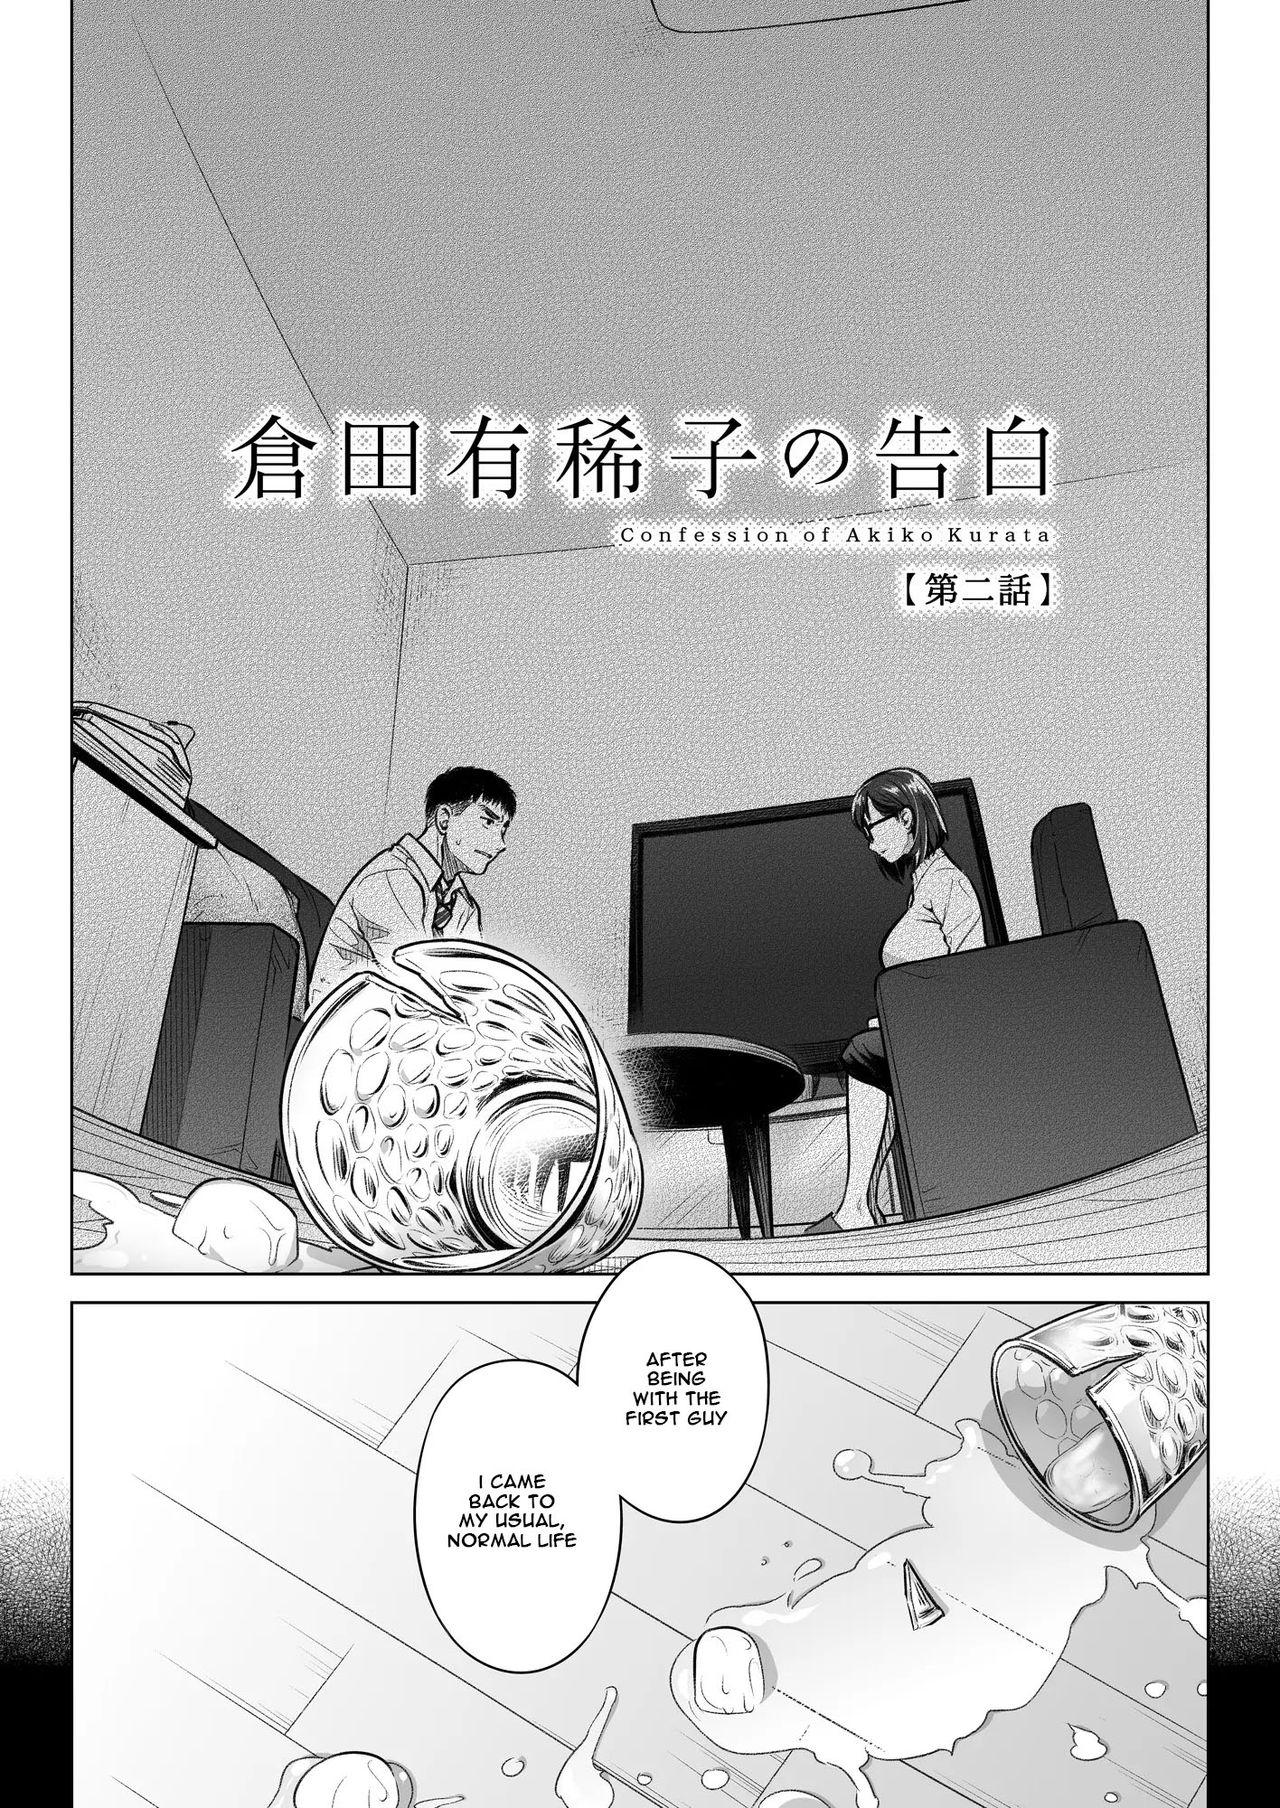 4some Kurata Akiko no Kokuhaku 2 - Confession of Akiko kurata Epsode 2 - Original Negro - Page 6